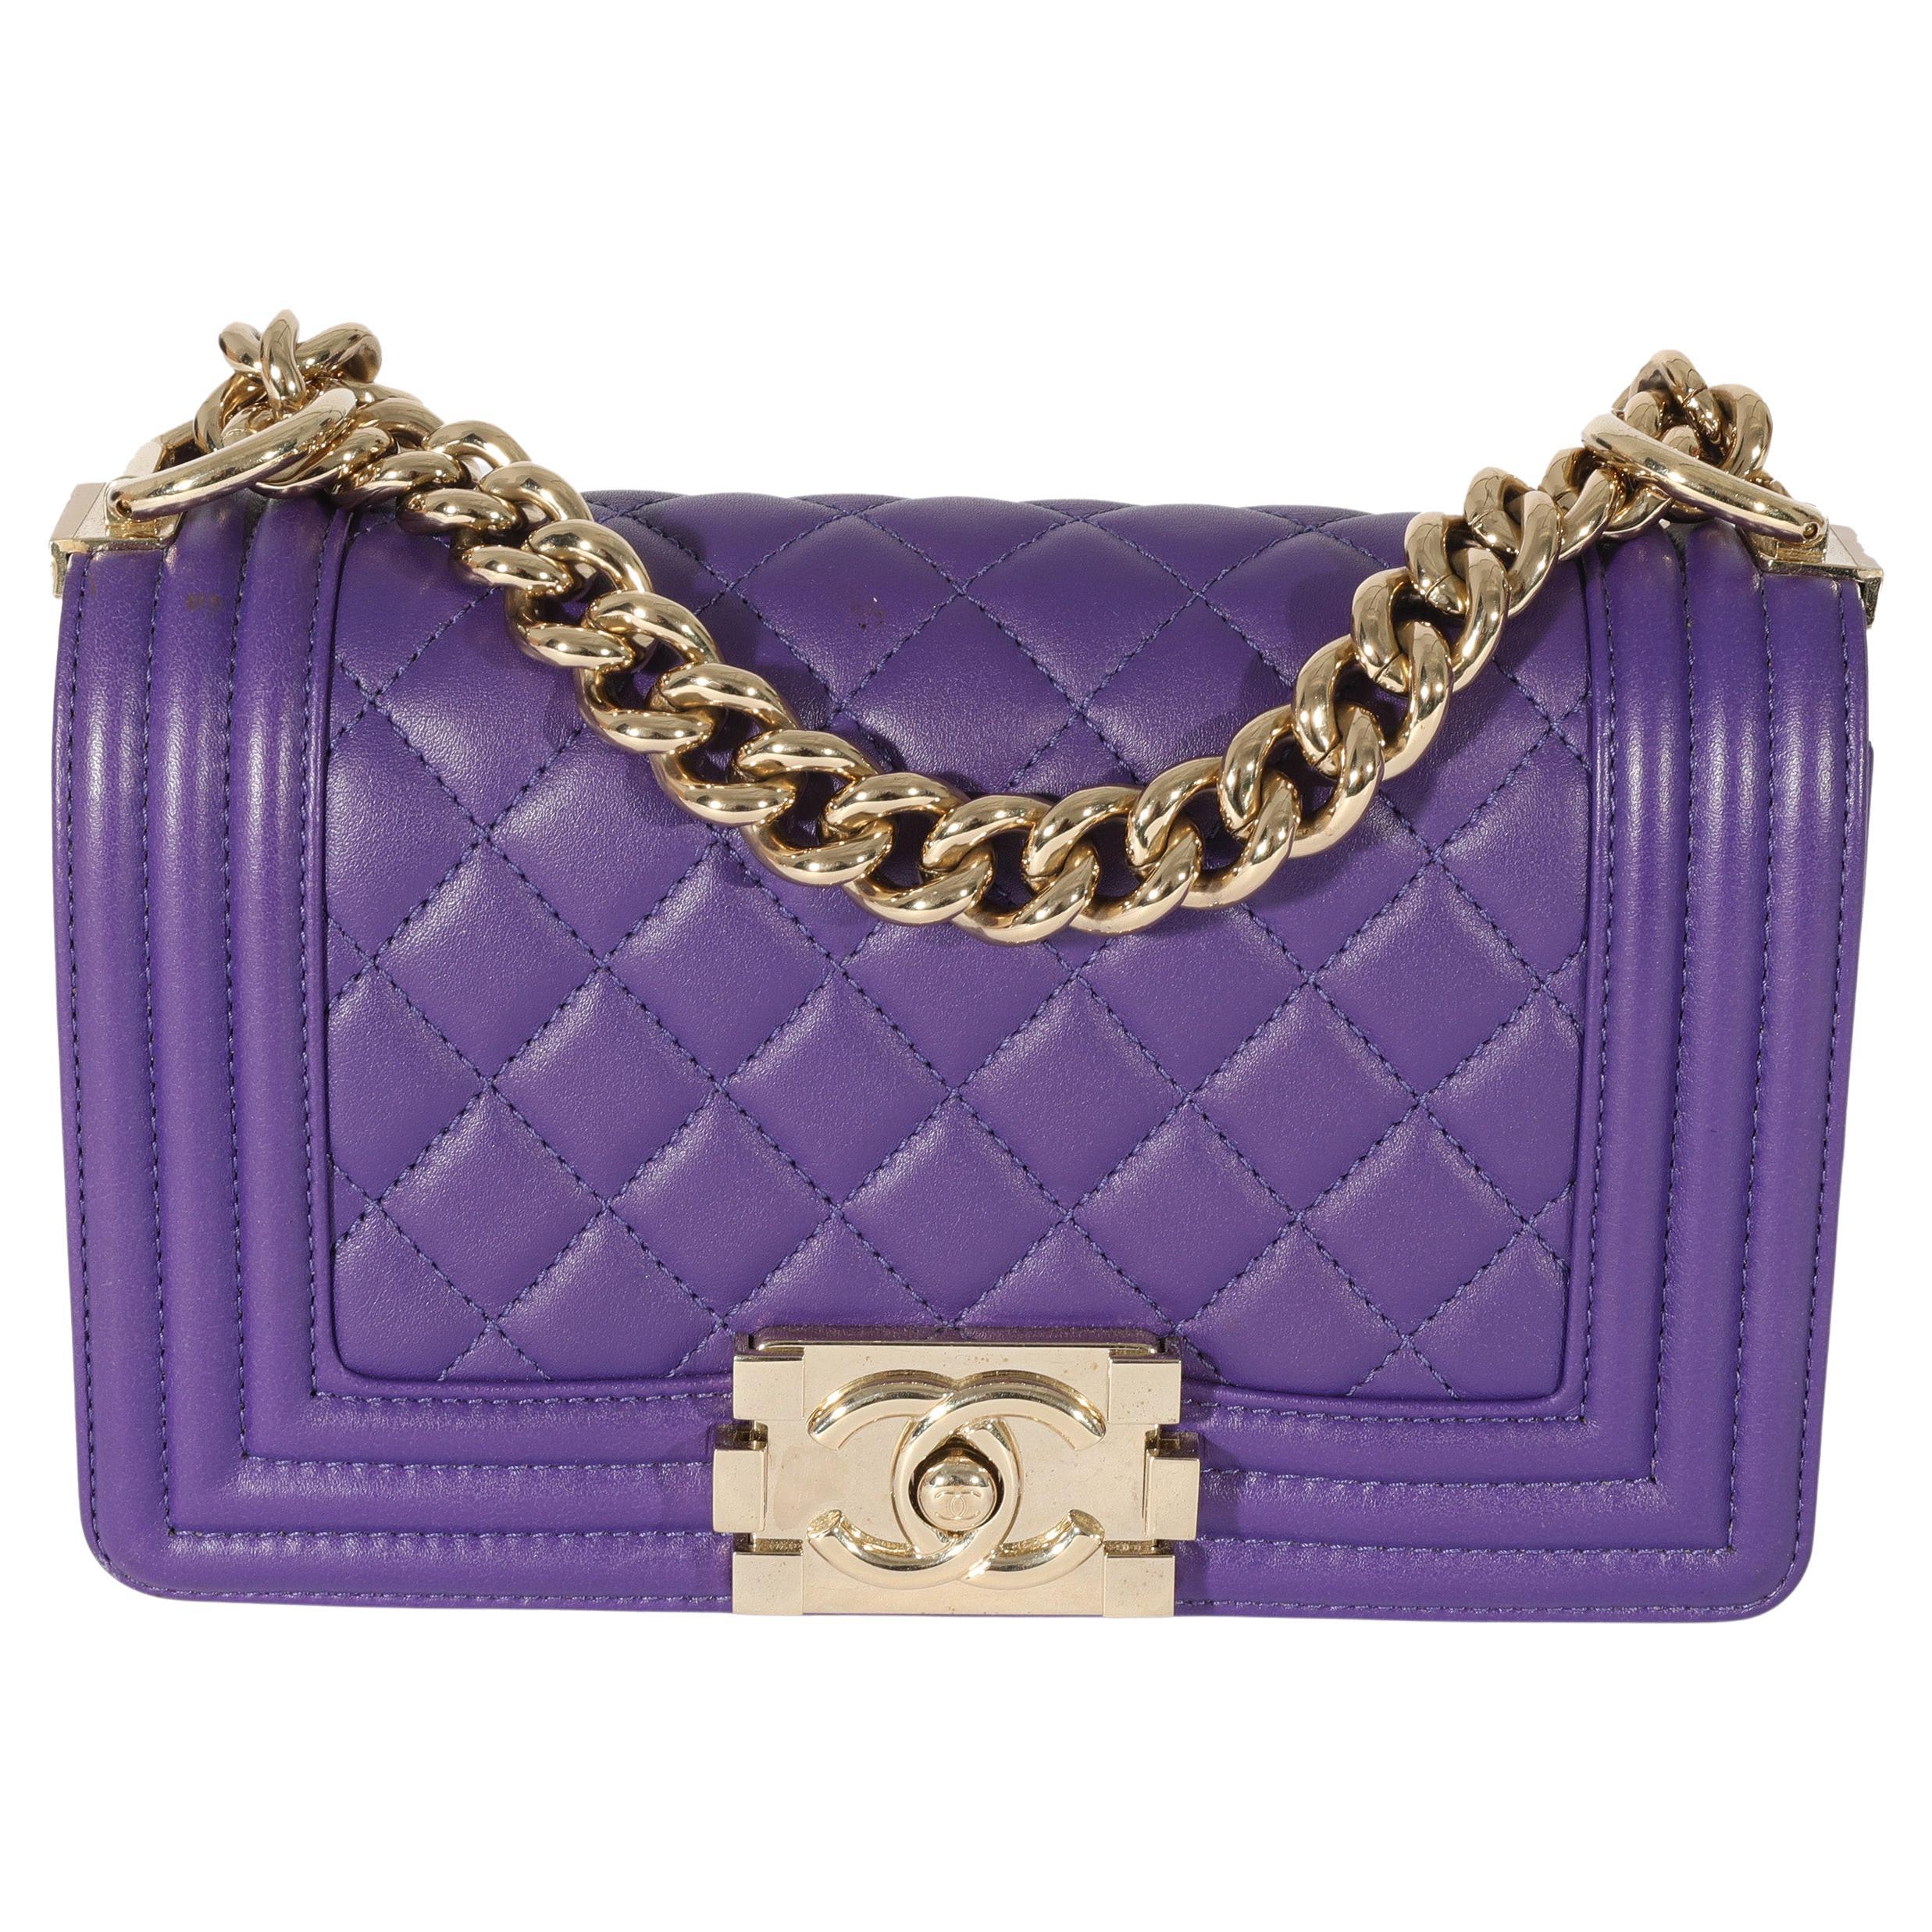 Chanel Purple Lambskin Small Boy Bag